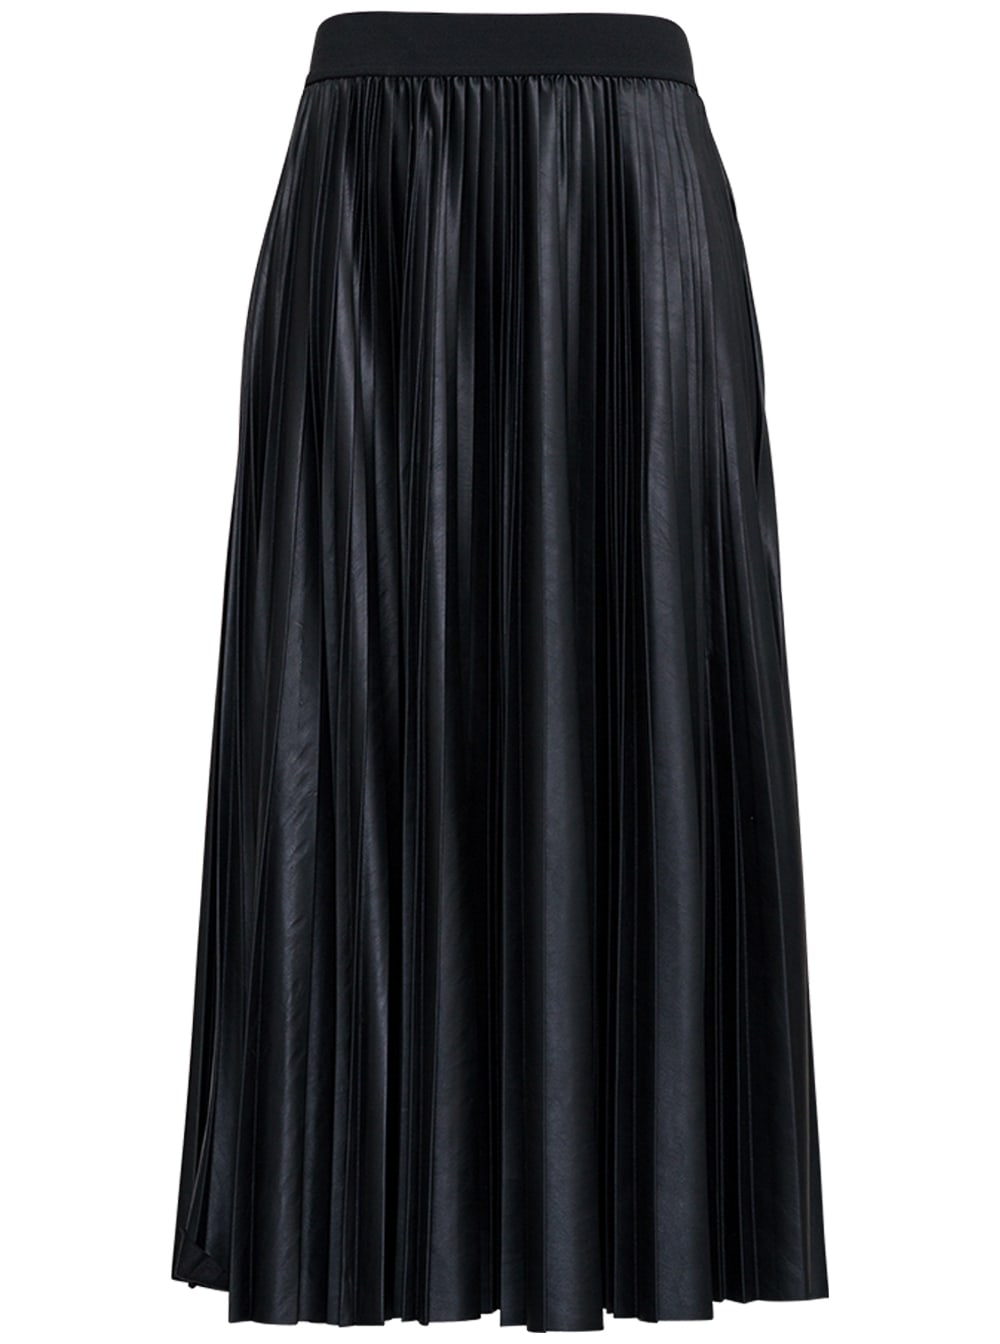 Antonelli Ismene Black Pleated Leatheret Skirt